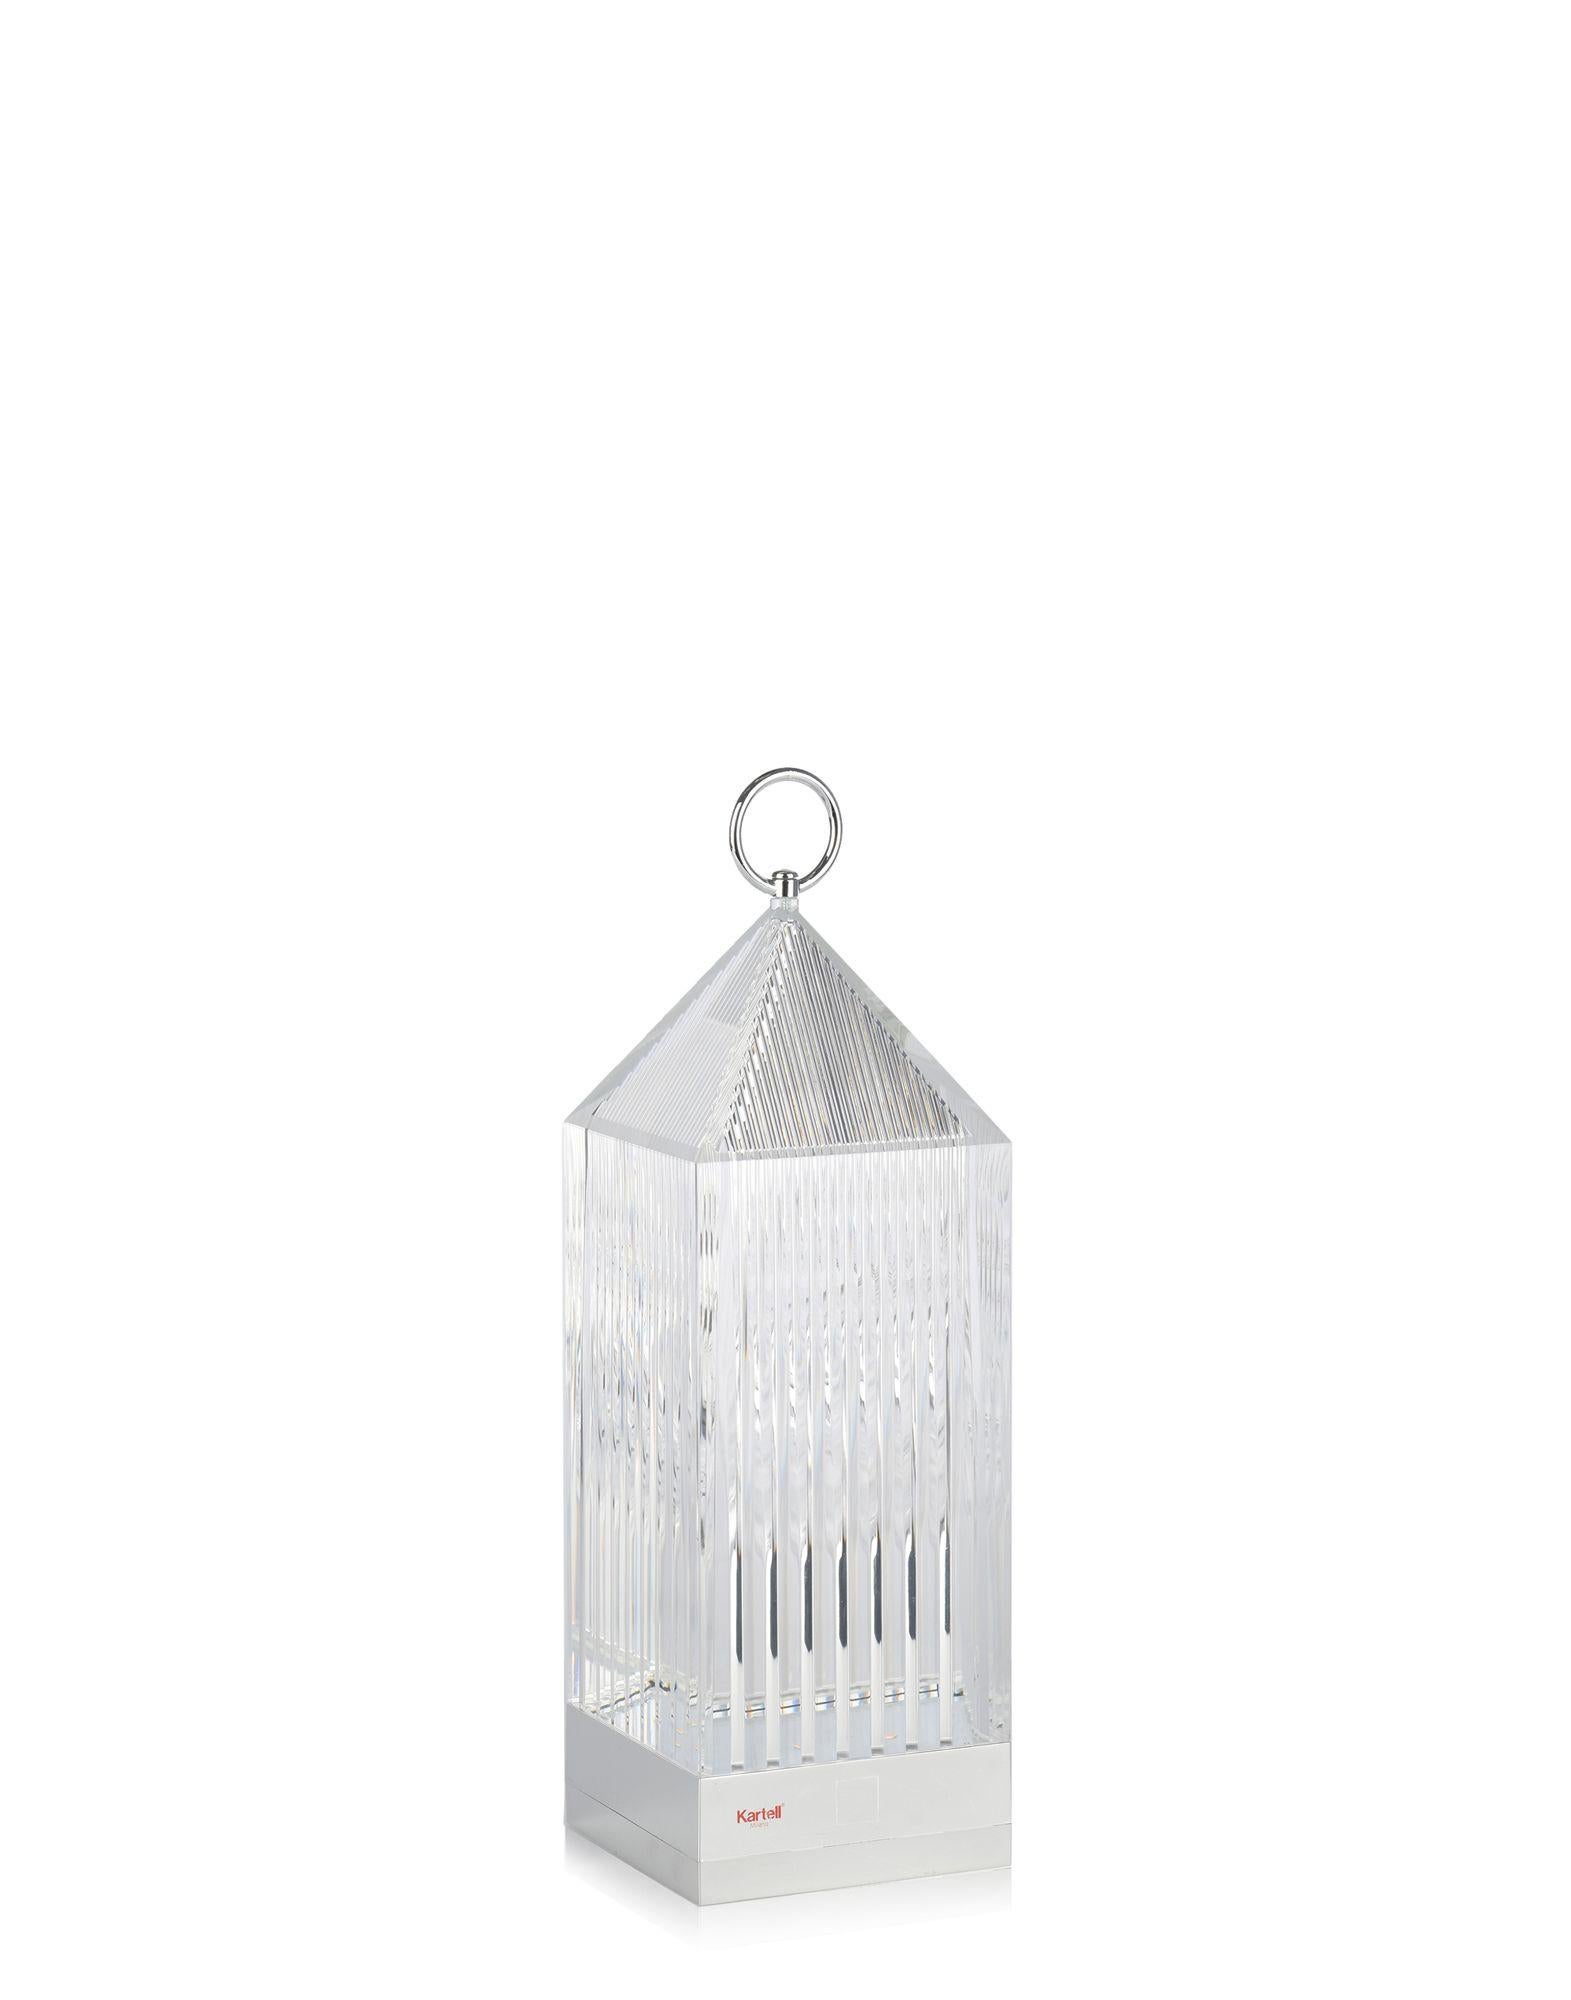 La Lanterne de Fabio Novembre est une lampe portable originale à LED, transparente, 